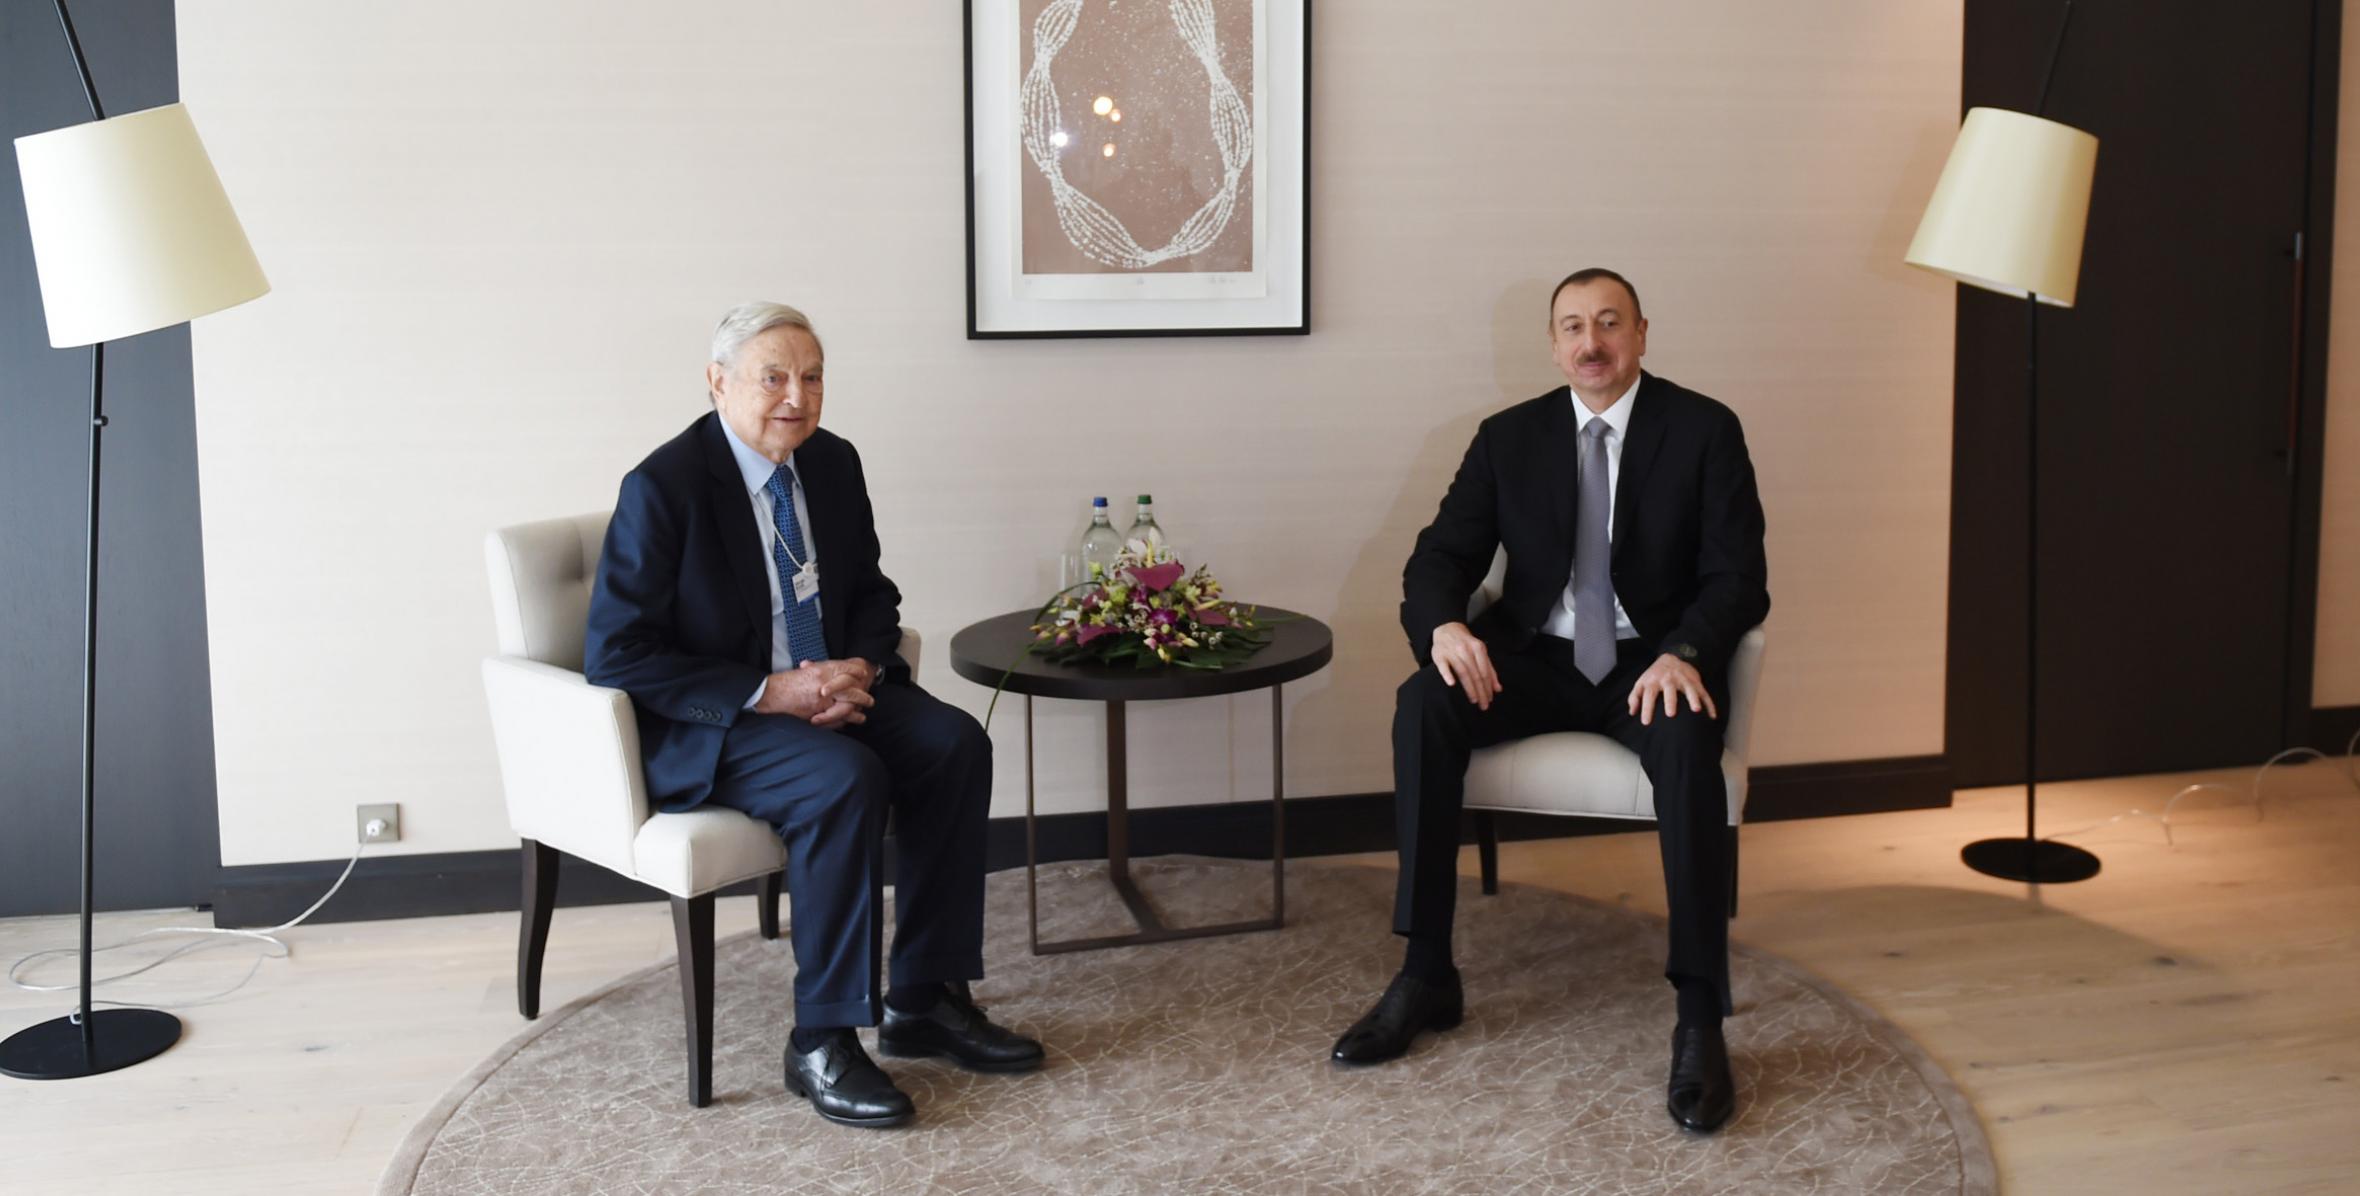 Ilham Aliyev met founder of the Soros Foundation George Soros